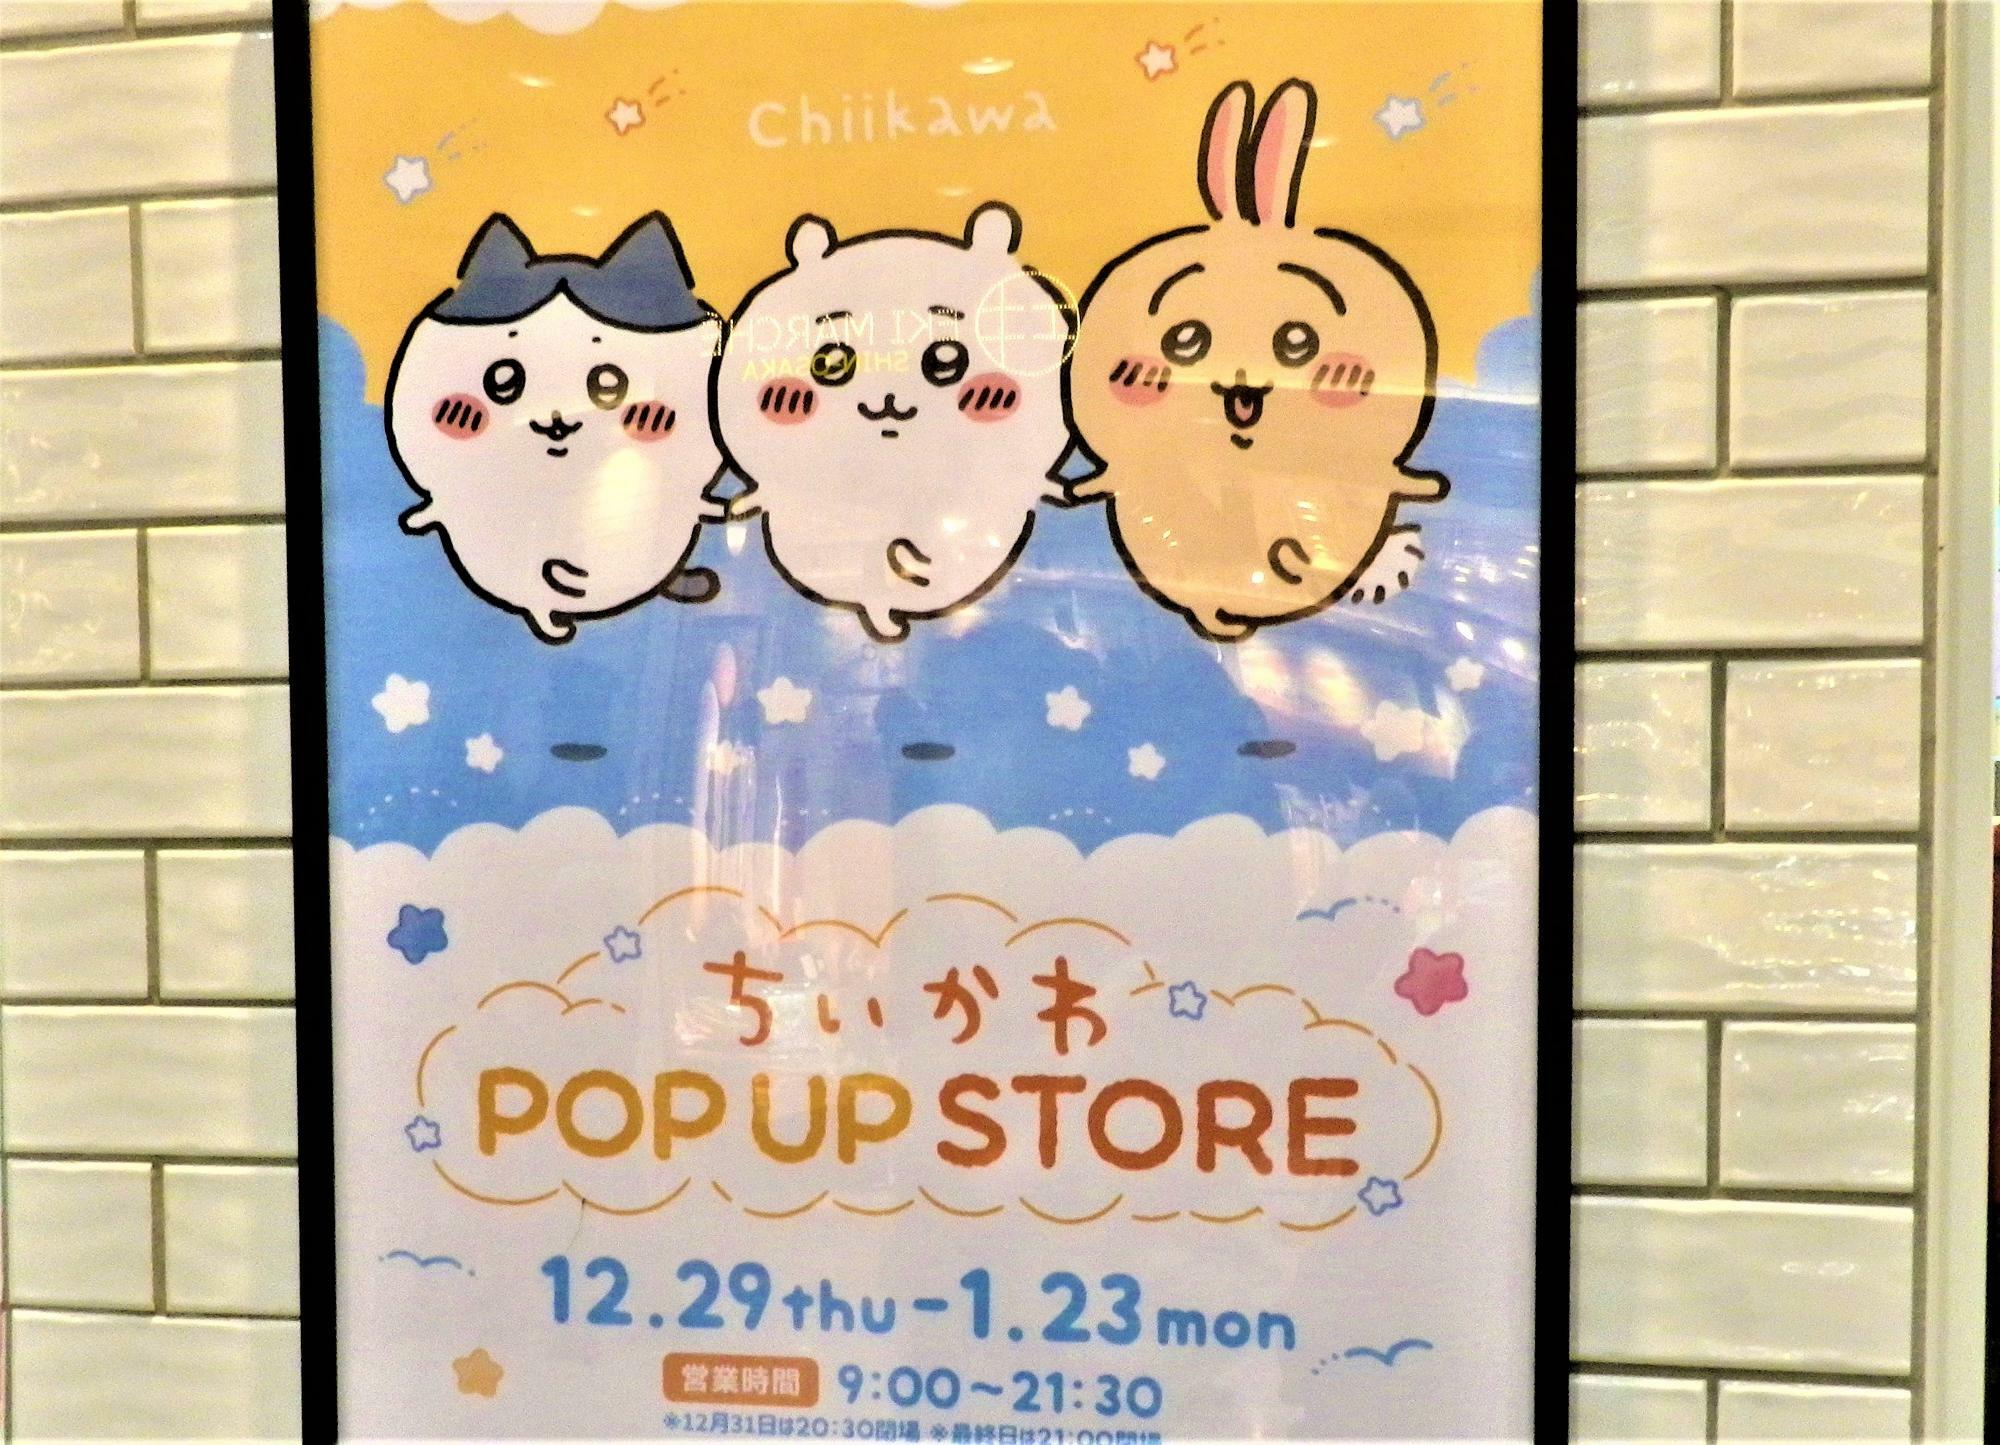 「ちいかわ POP UP STORE」の可愛いポスター。